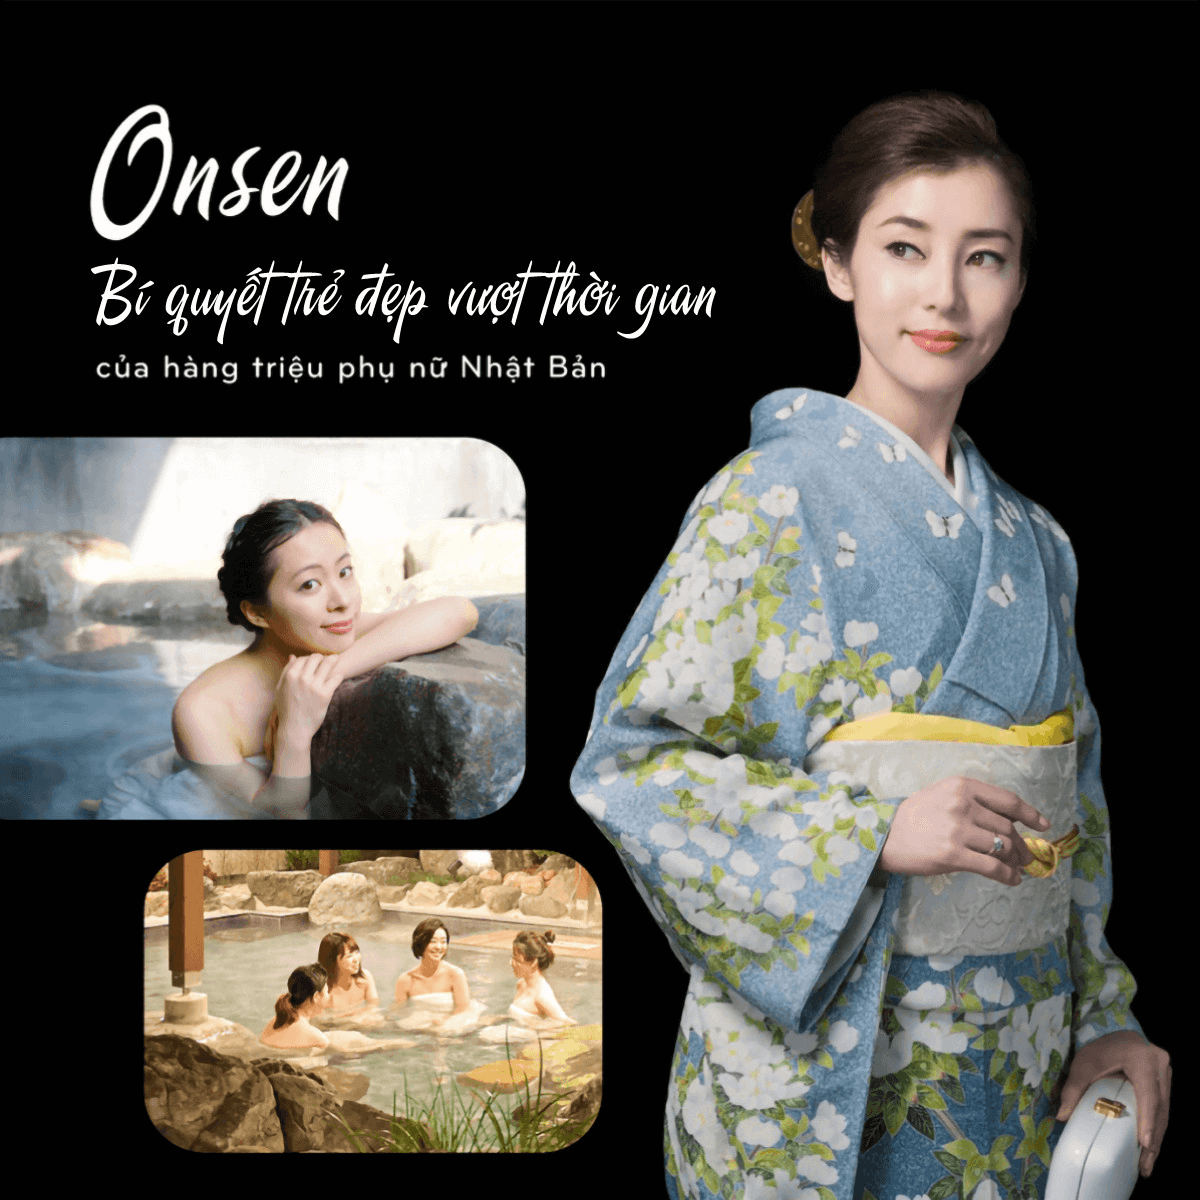 Máy tắm ion khoáng Fuji Smart Onsen JP là bí quyết trẻ đẹp vượt thời gian của phụ nữ Nhật Bản